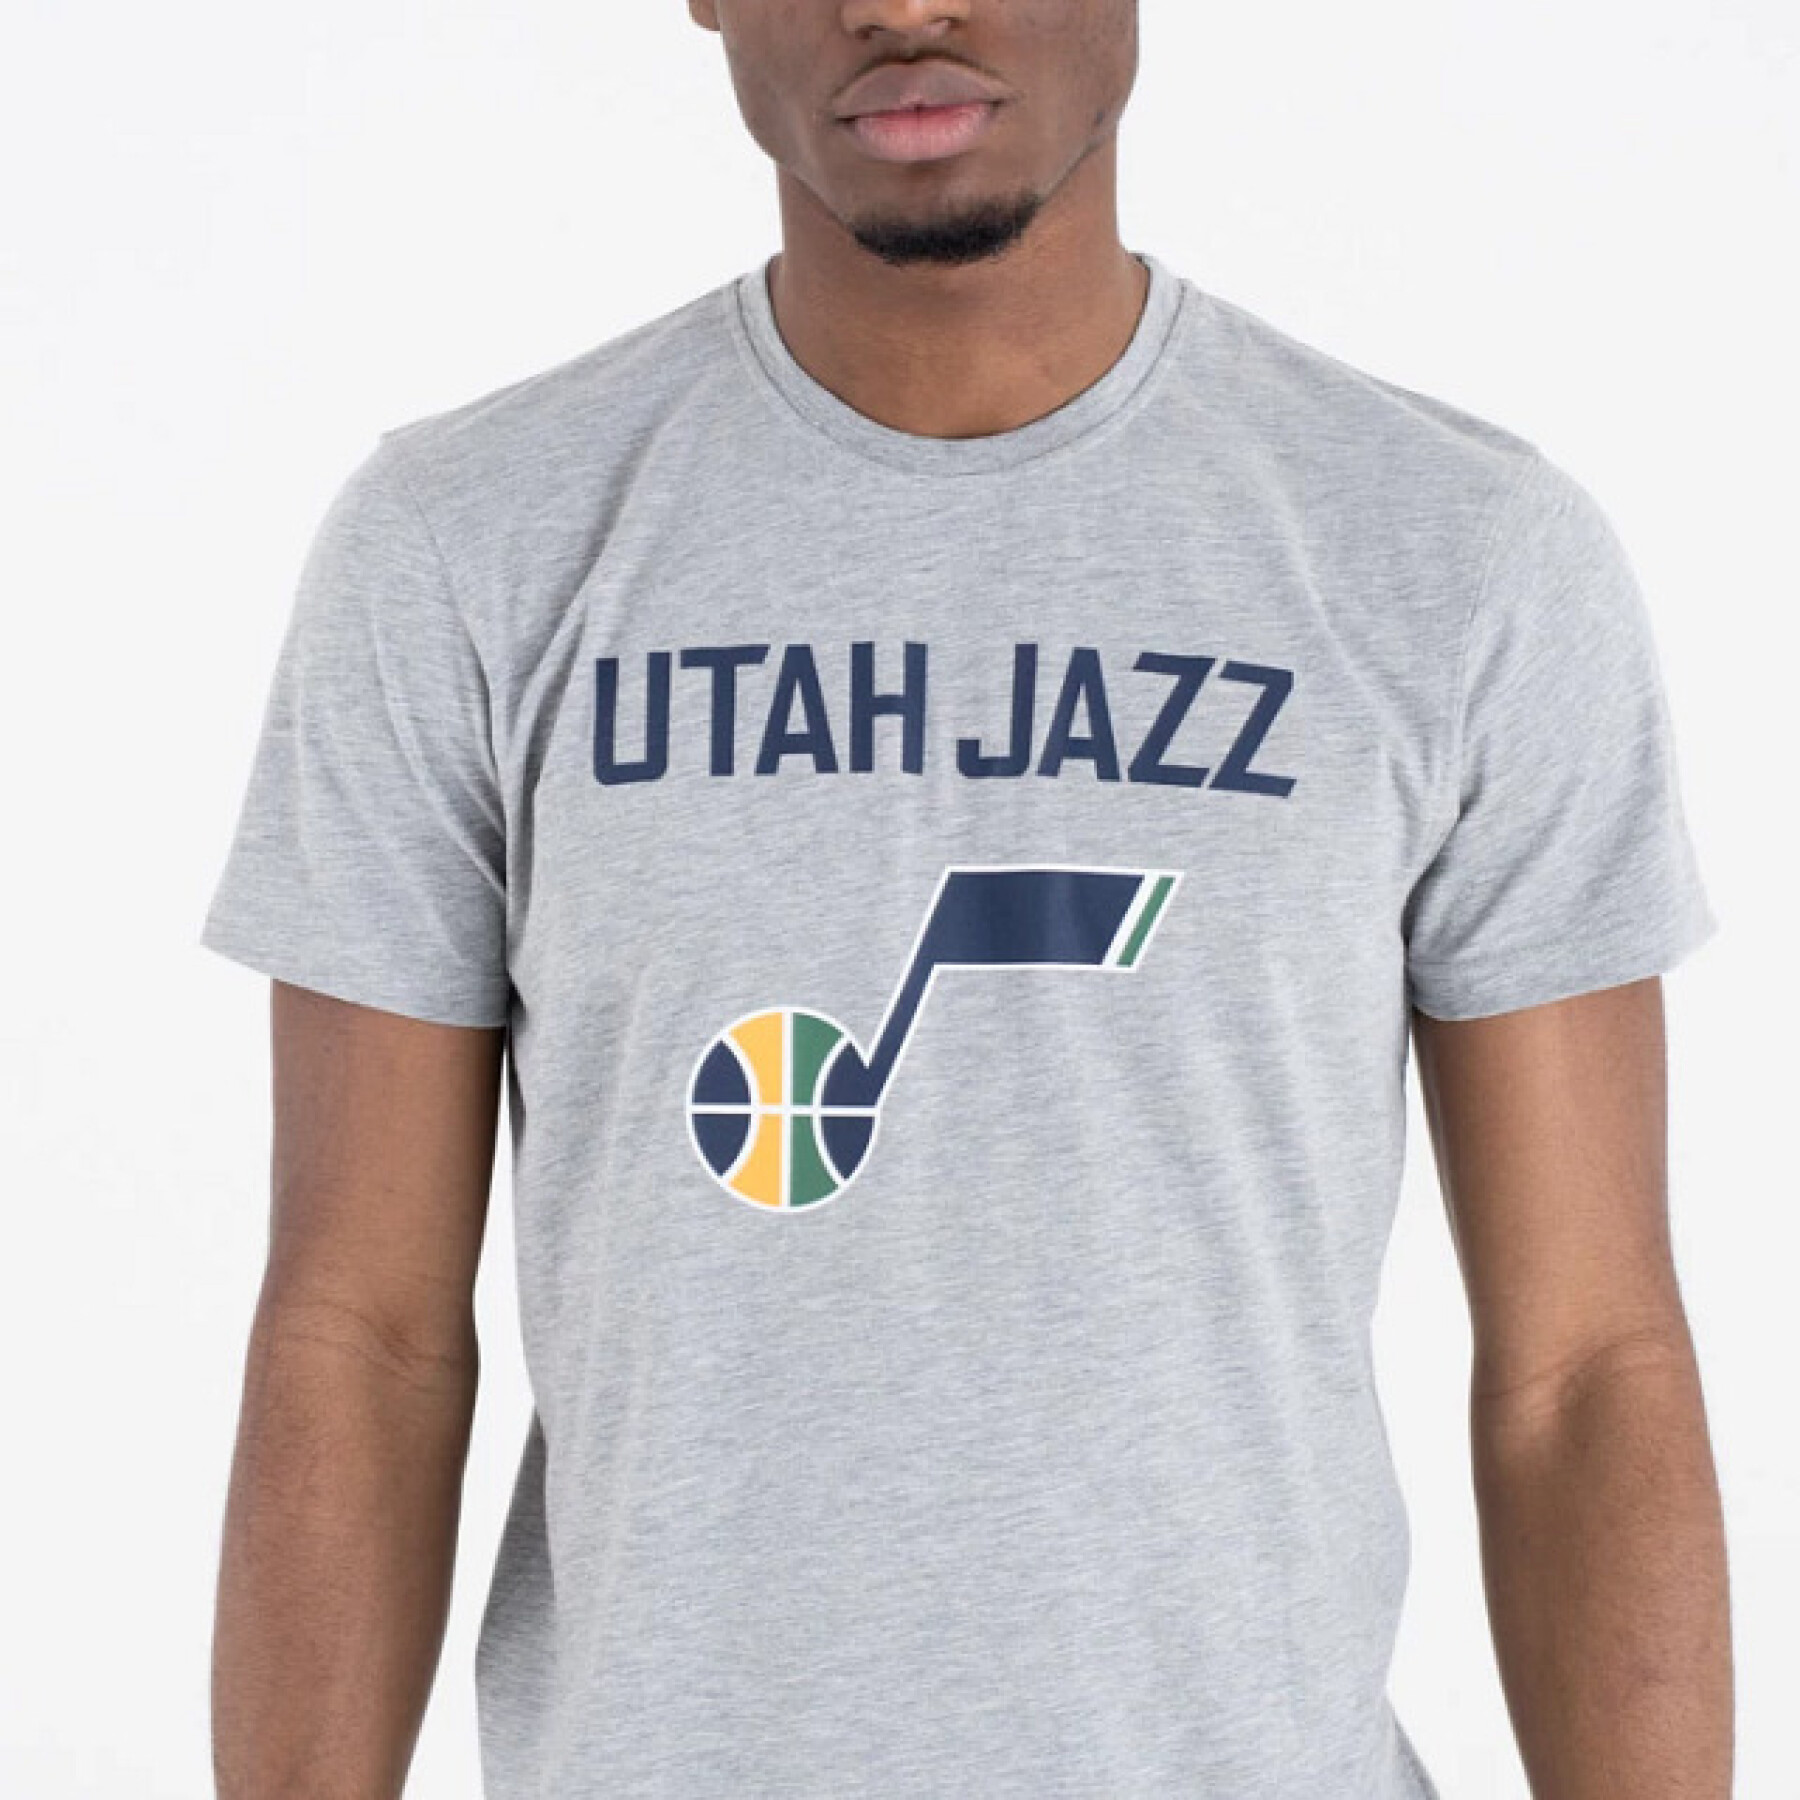 Camiseta Utah Jazz NBA